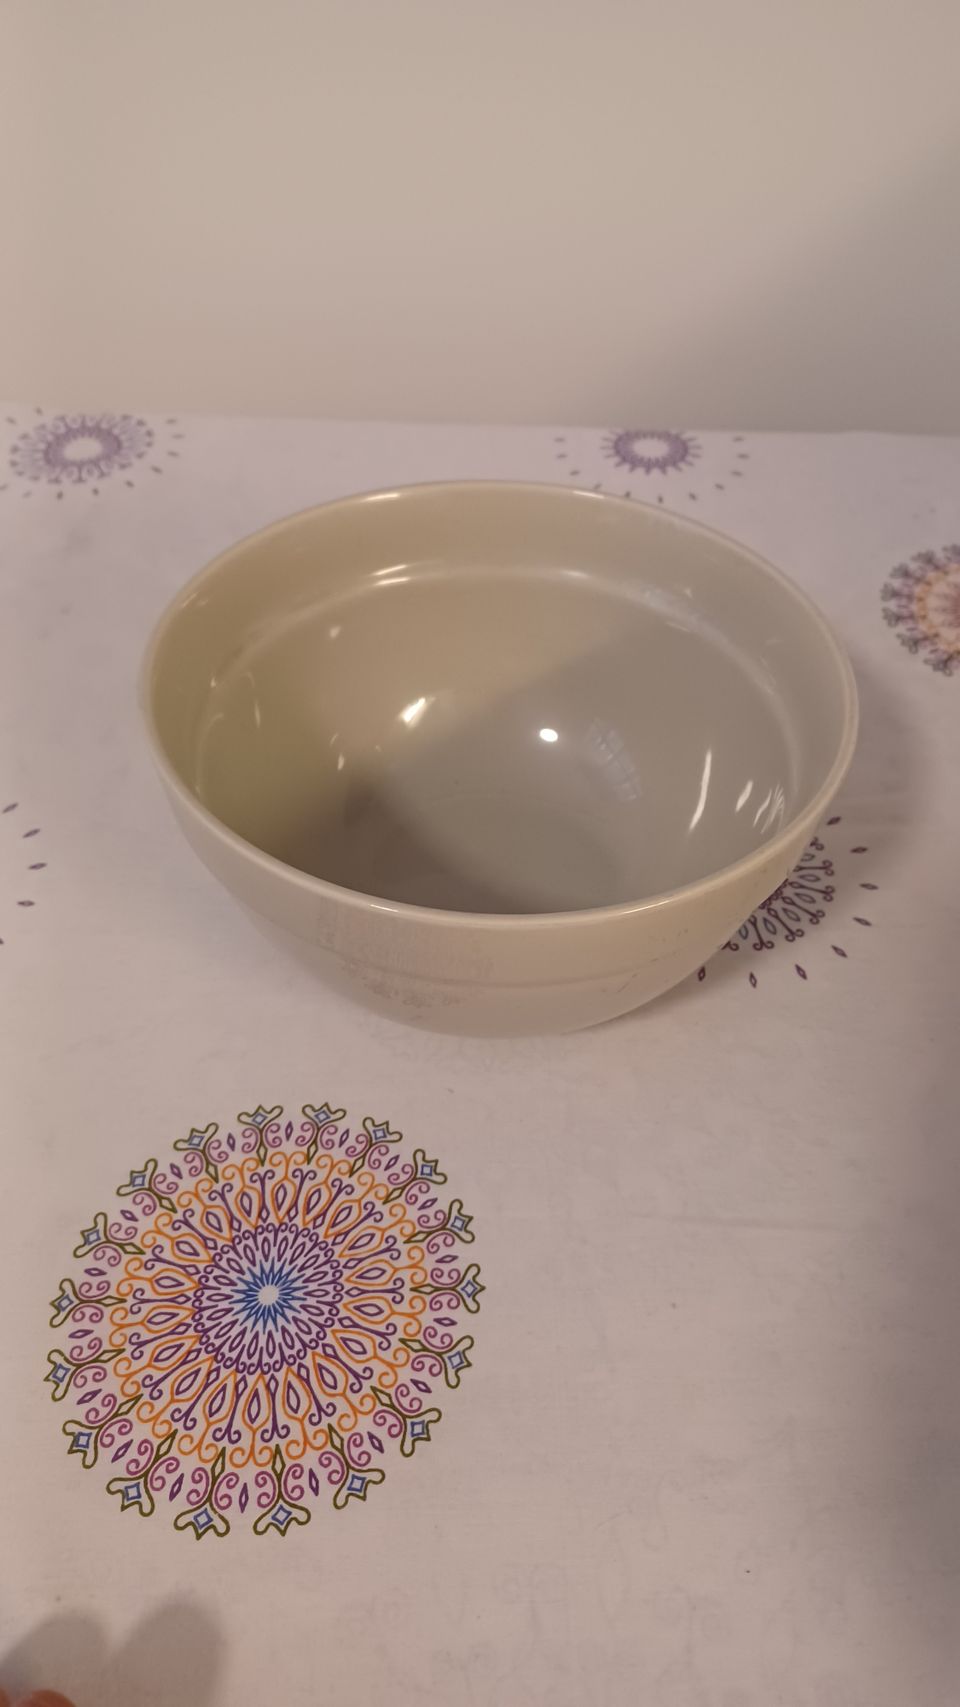 Hemtex bowl